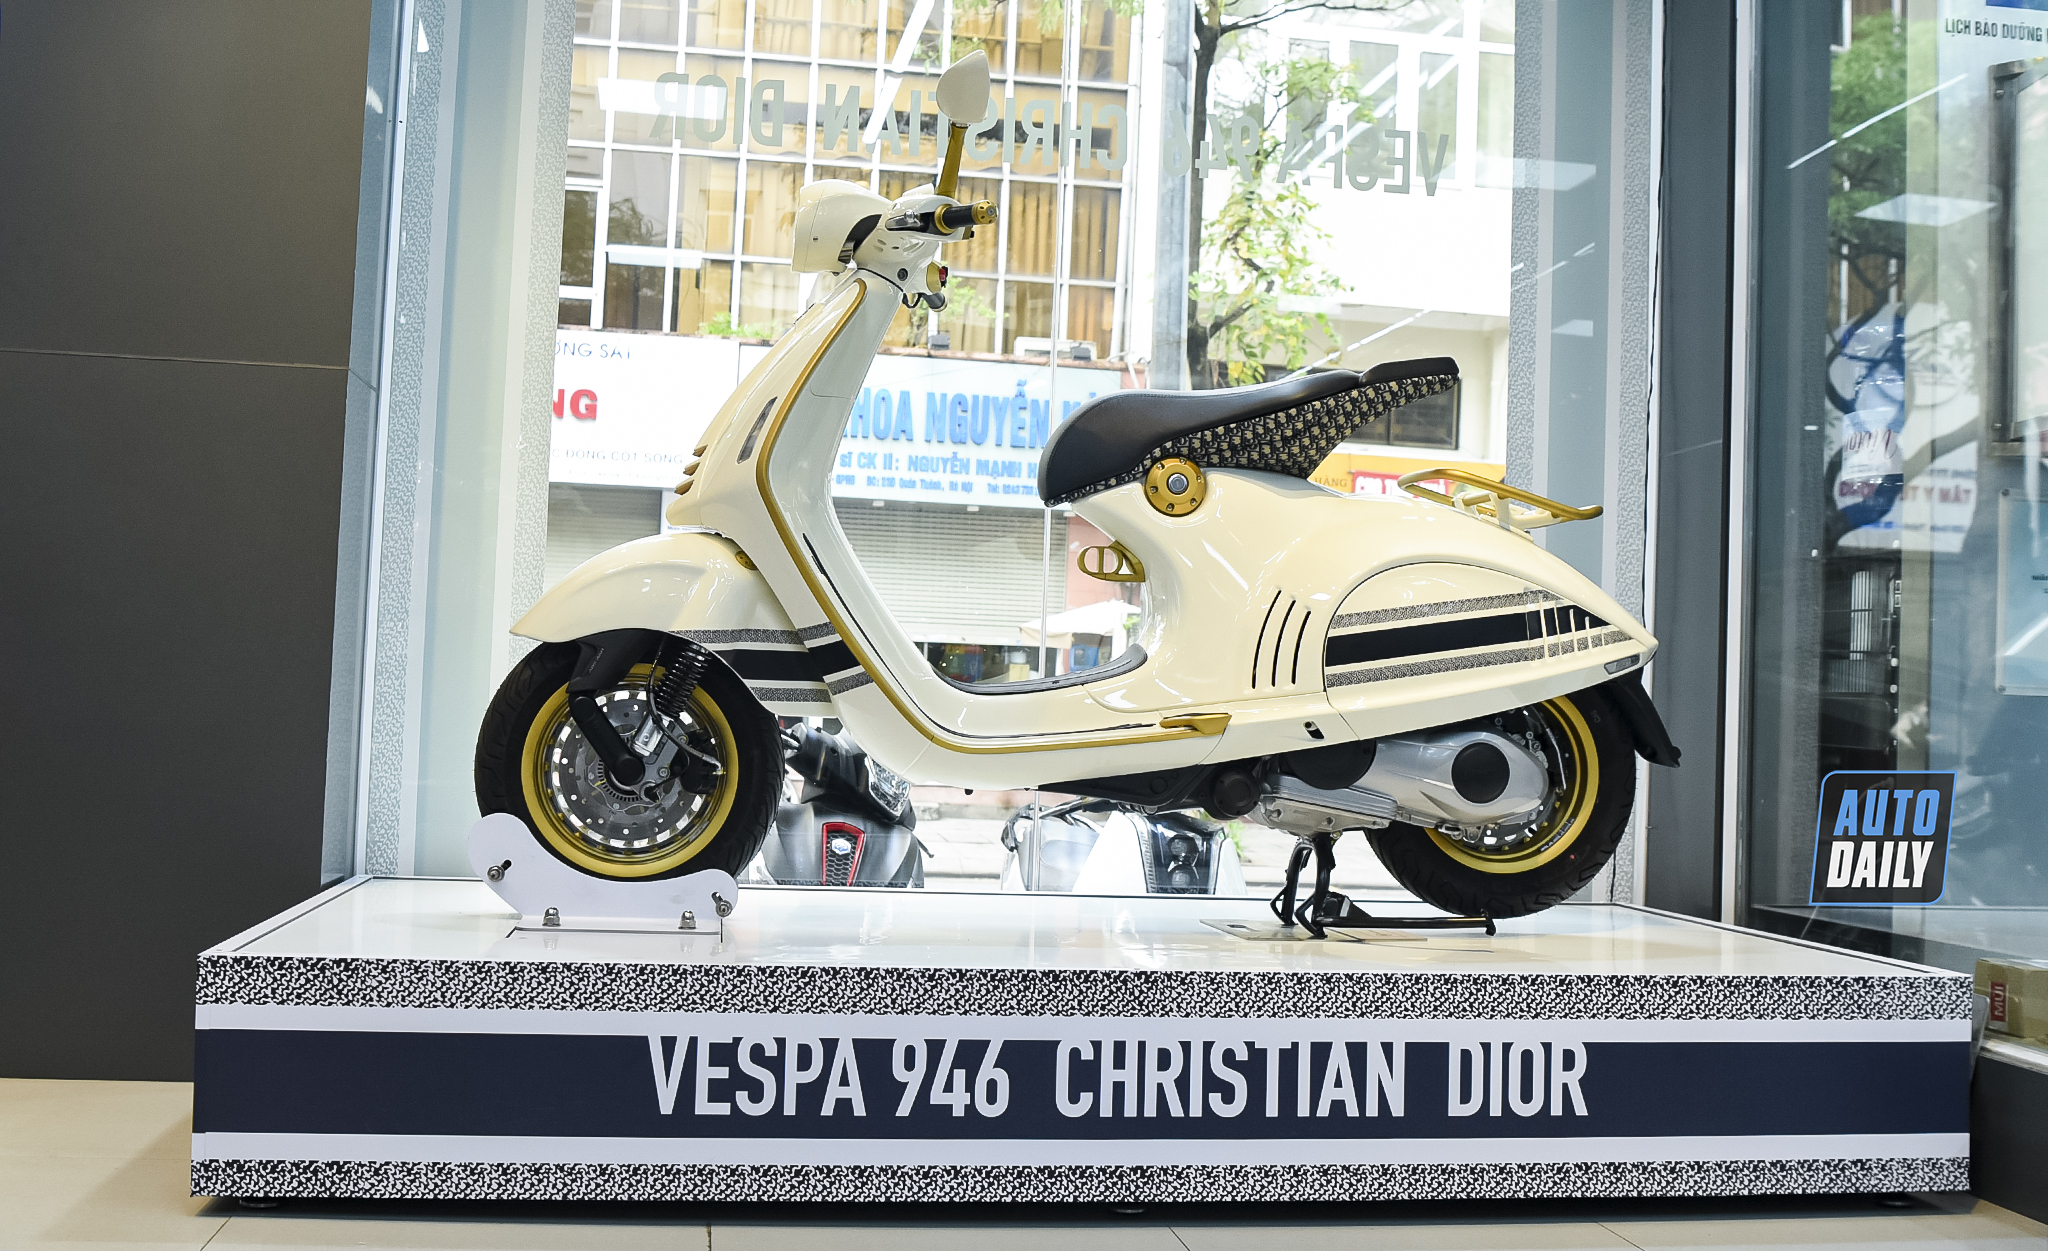 Cận cảnh Vespa 946 Christian Dior giá gần 700 triệu đồng tại Việt Nam